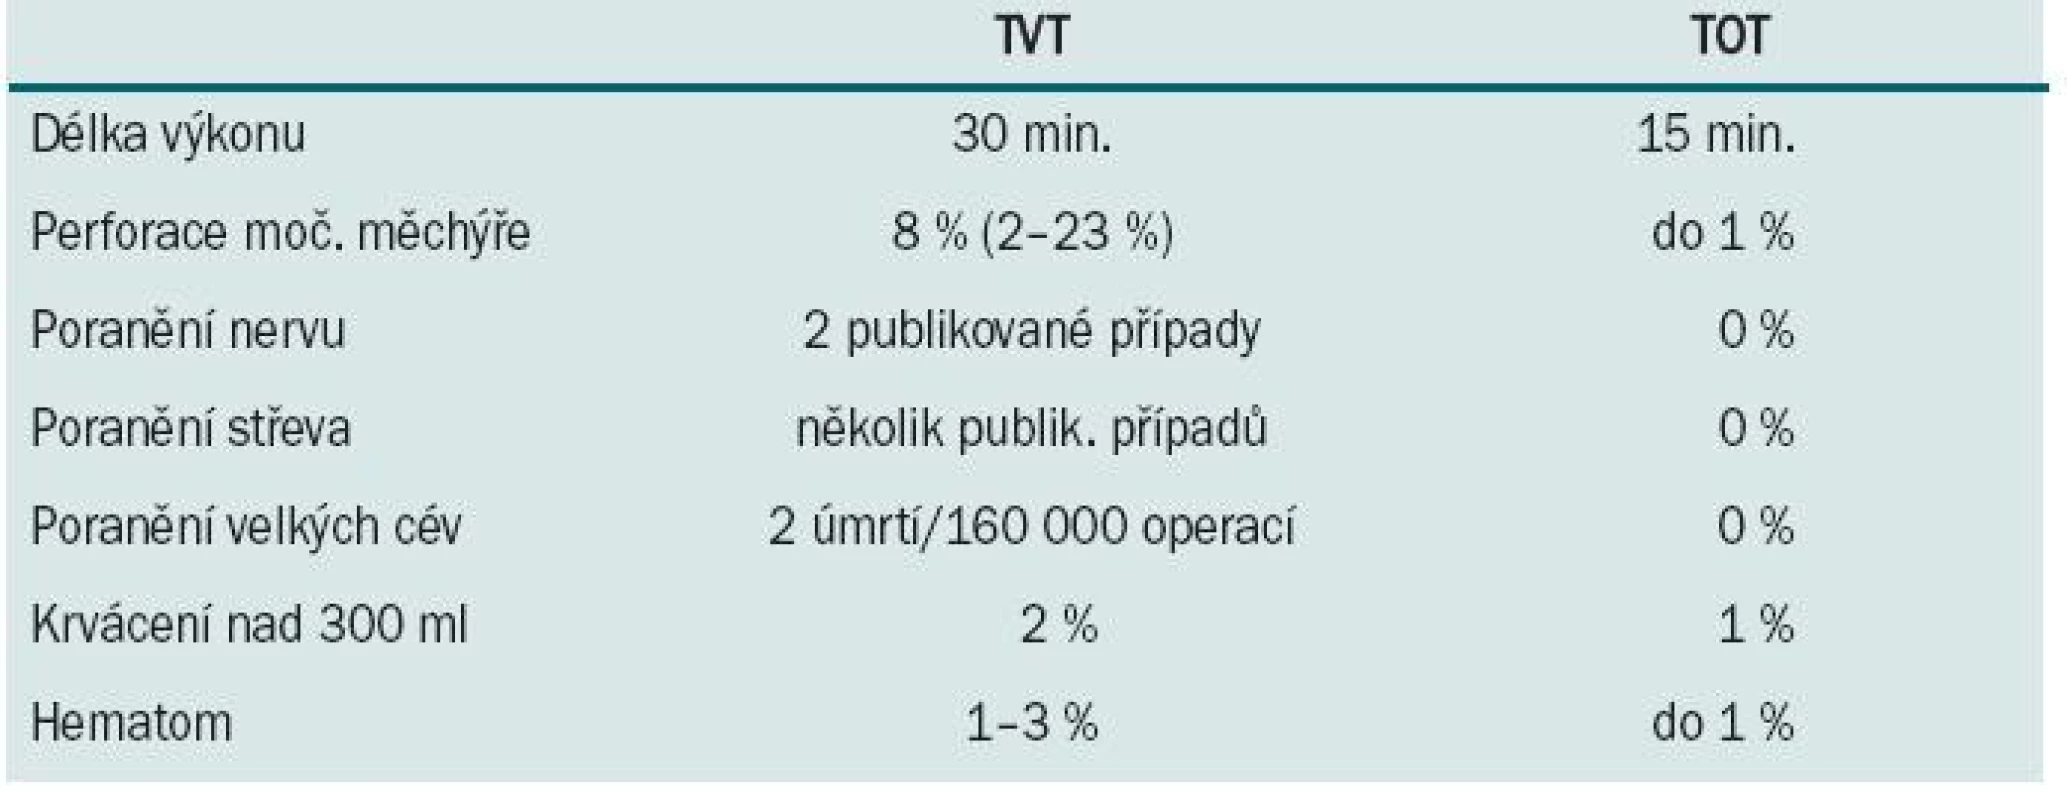 Peroperační komplikace TVT vs. TOT.